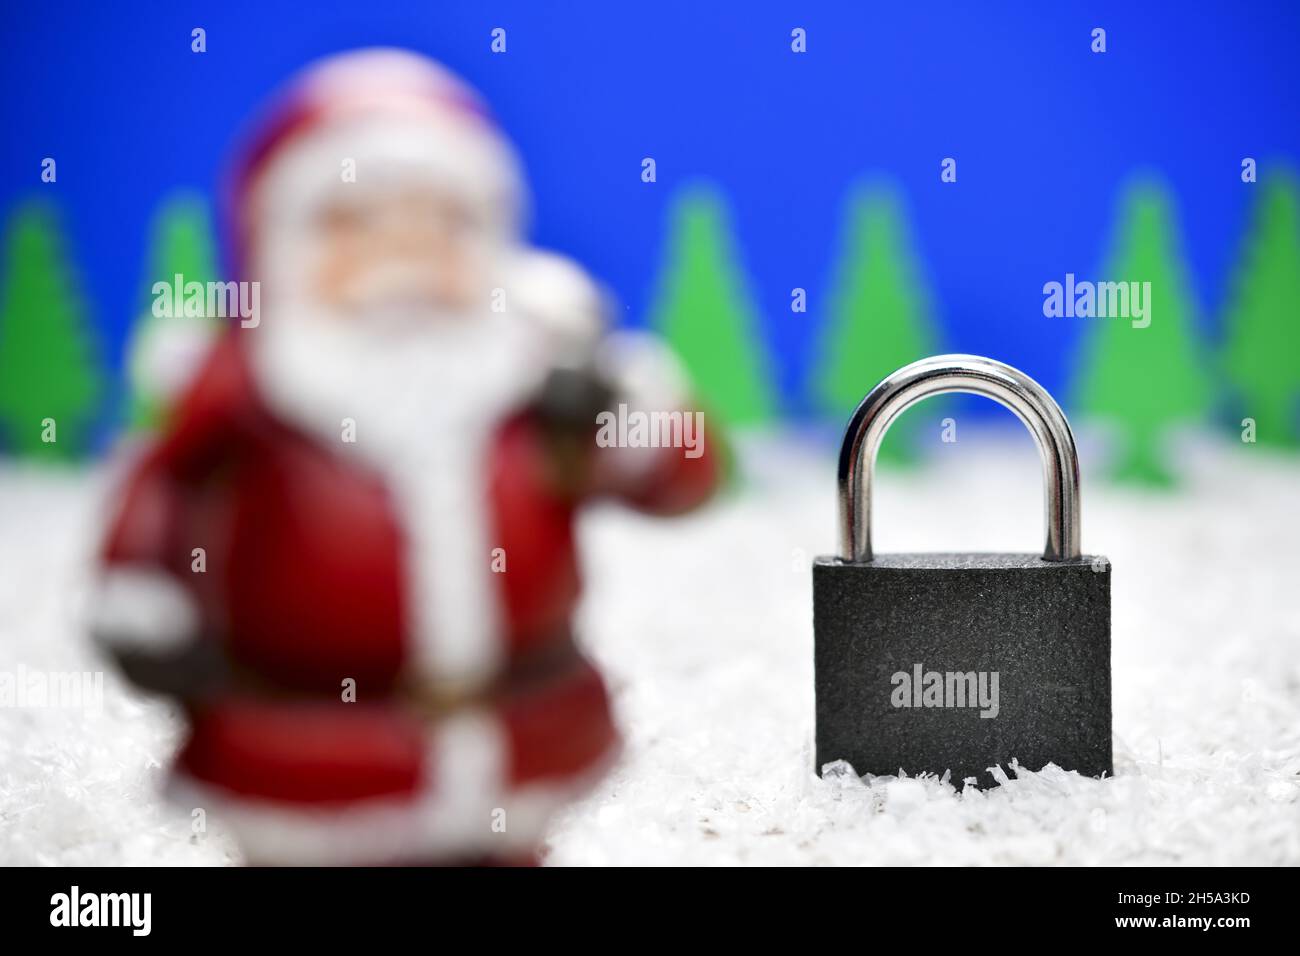 Weihnachtsmannfigur und Vorhängeschloss, Symbolfoto Corona-Weihnachten und Lockdown Stock Photo